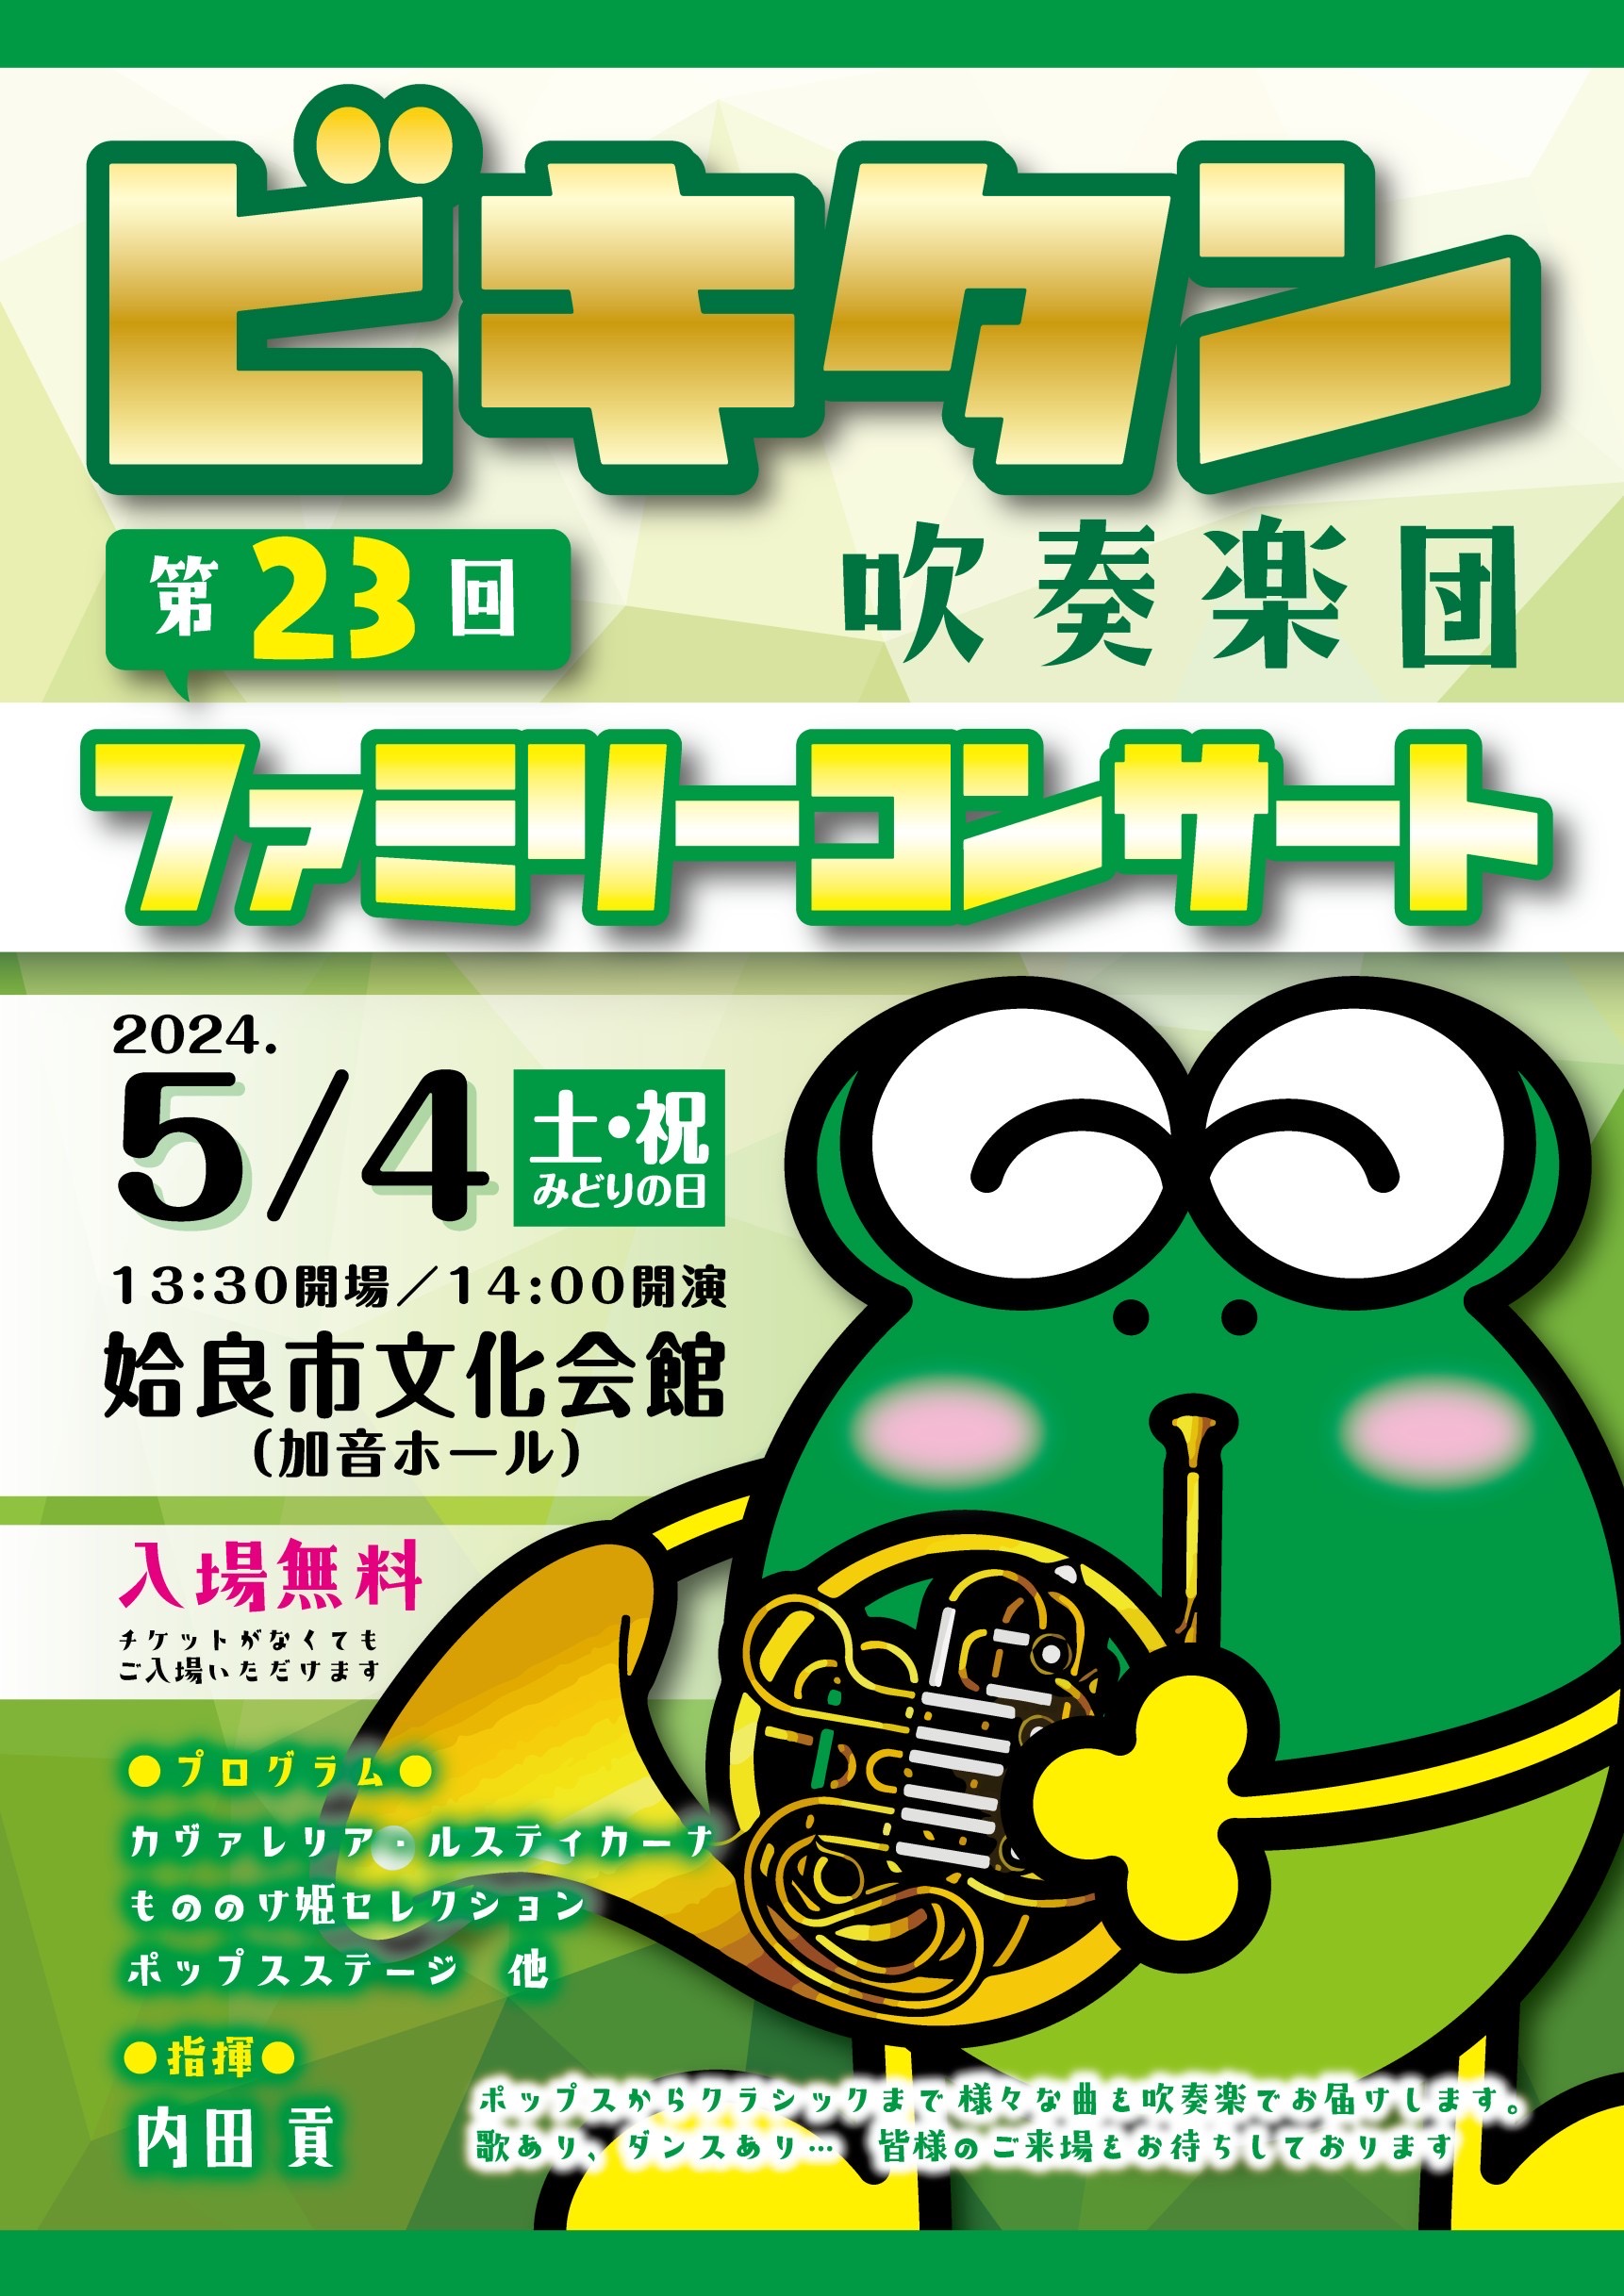 【姶良市】ビキタン吹奏楽団 第23回ファミリーコンサート